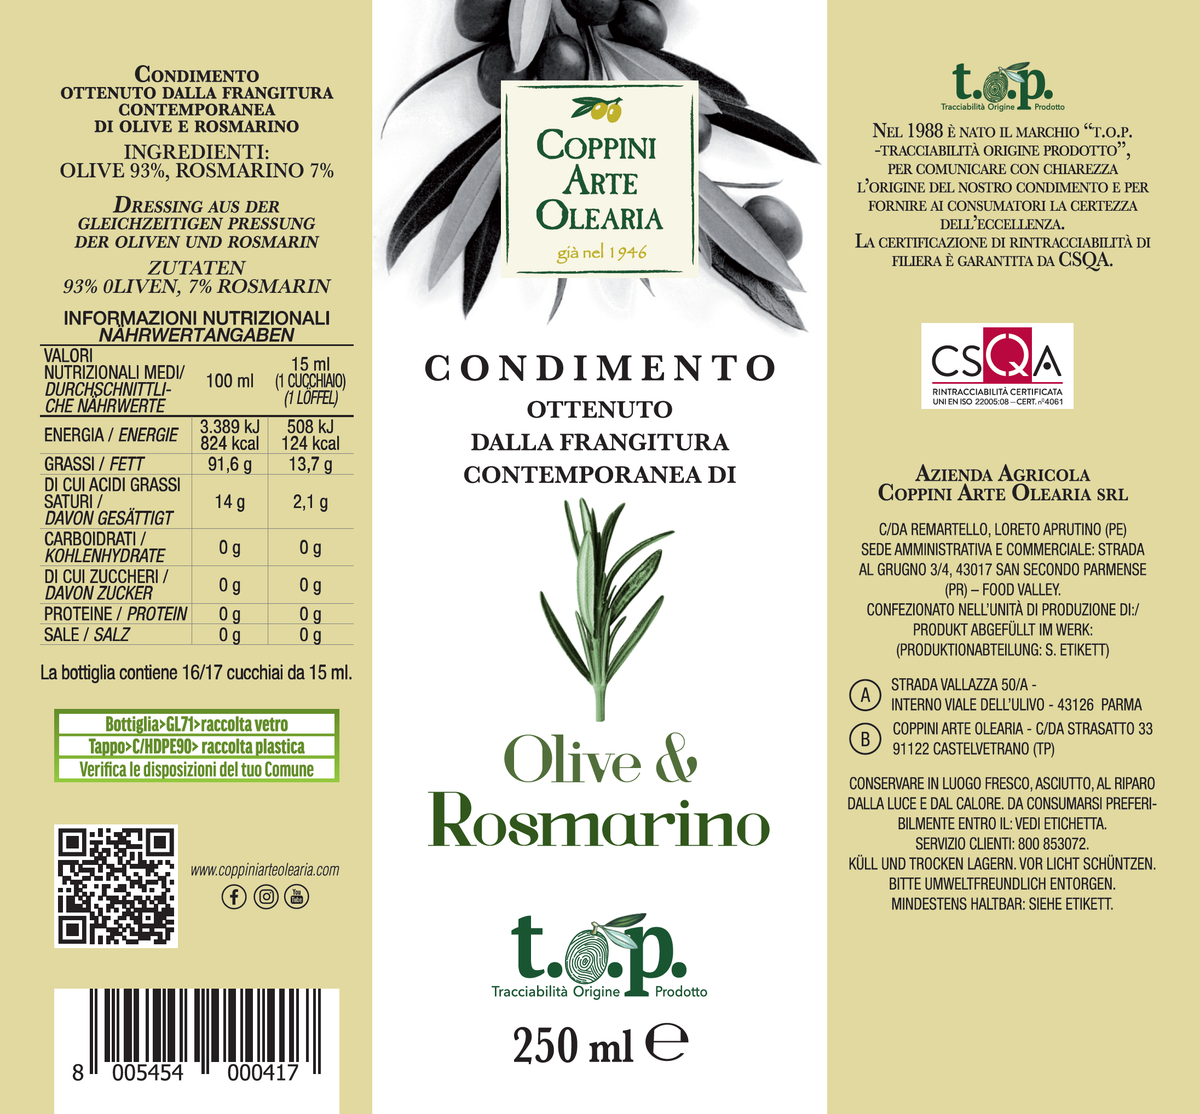 Etichetta Condimento Olio Evo e Rosmarino di Coppini Arte Olearia